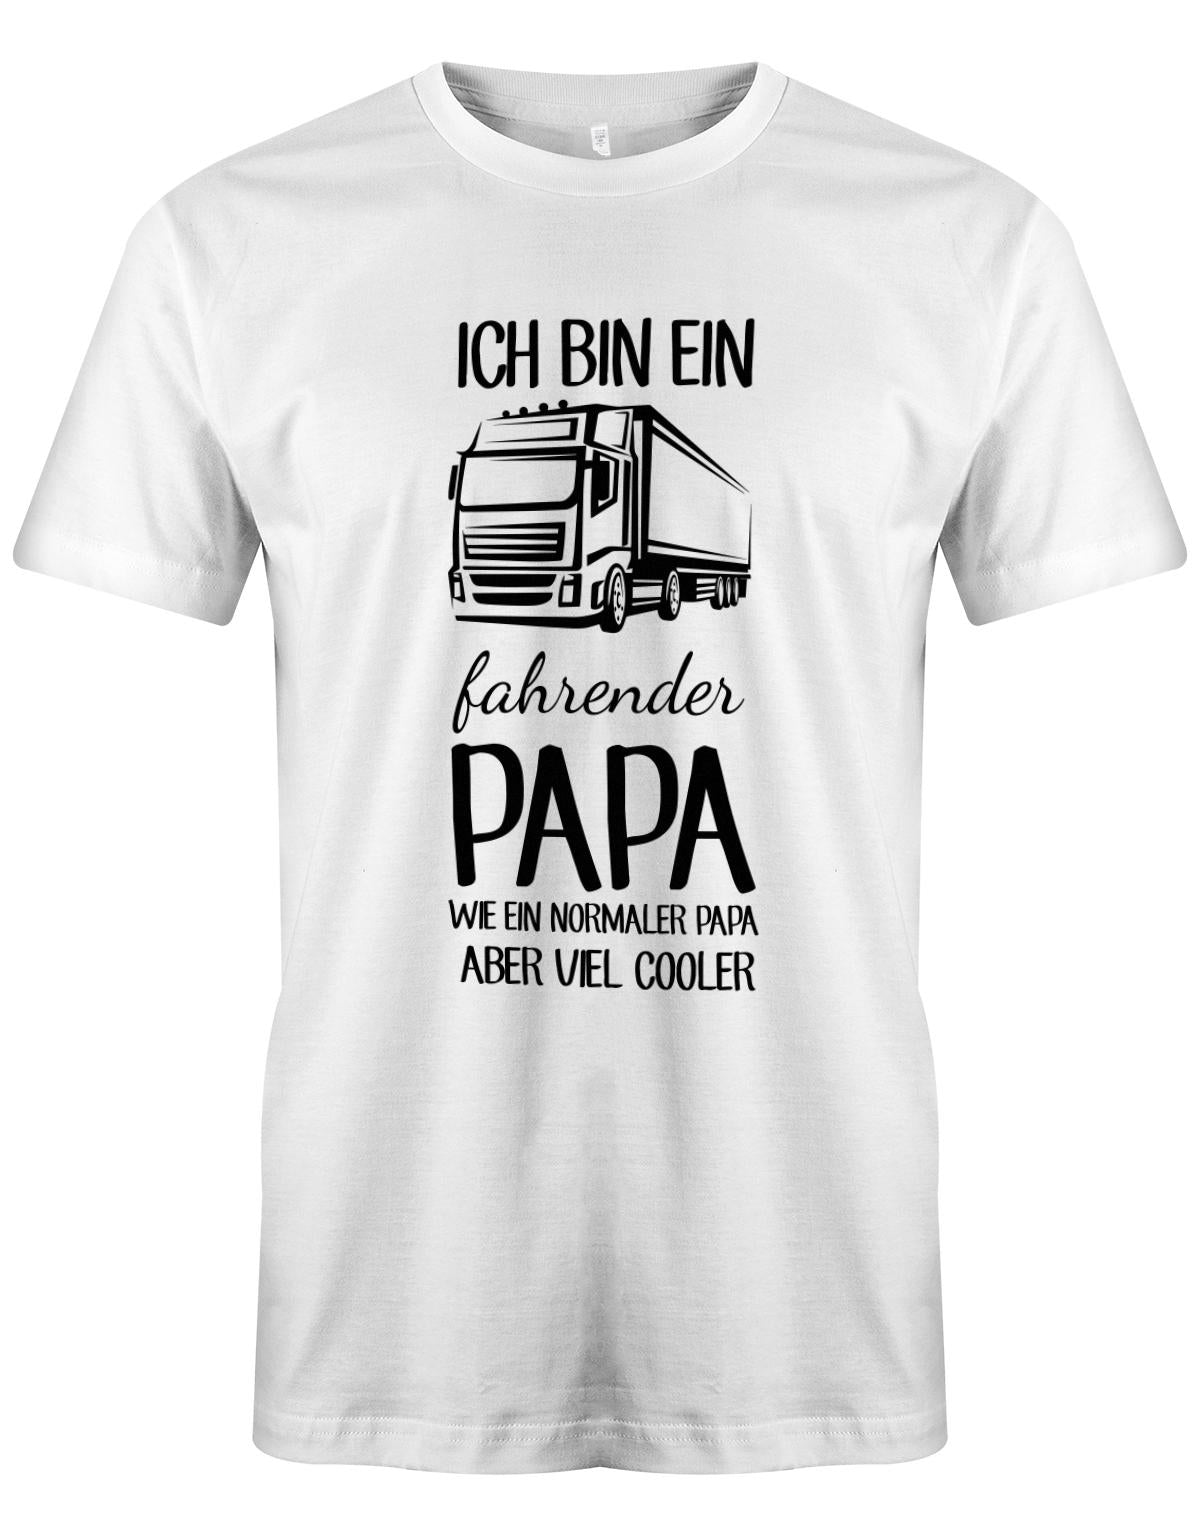 Ich-bin-ein-Lkw-fahrenender-papa-wie-ein-normaler-papa-aber-viel-Cooler-Herren-Shirt-Weiss